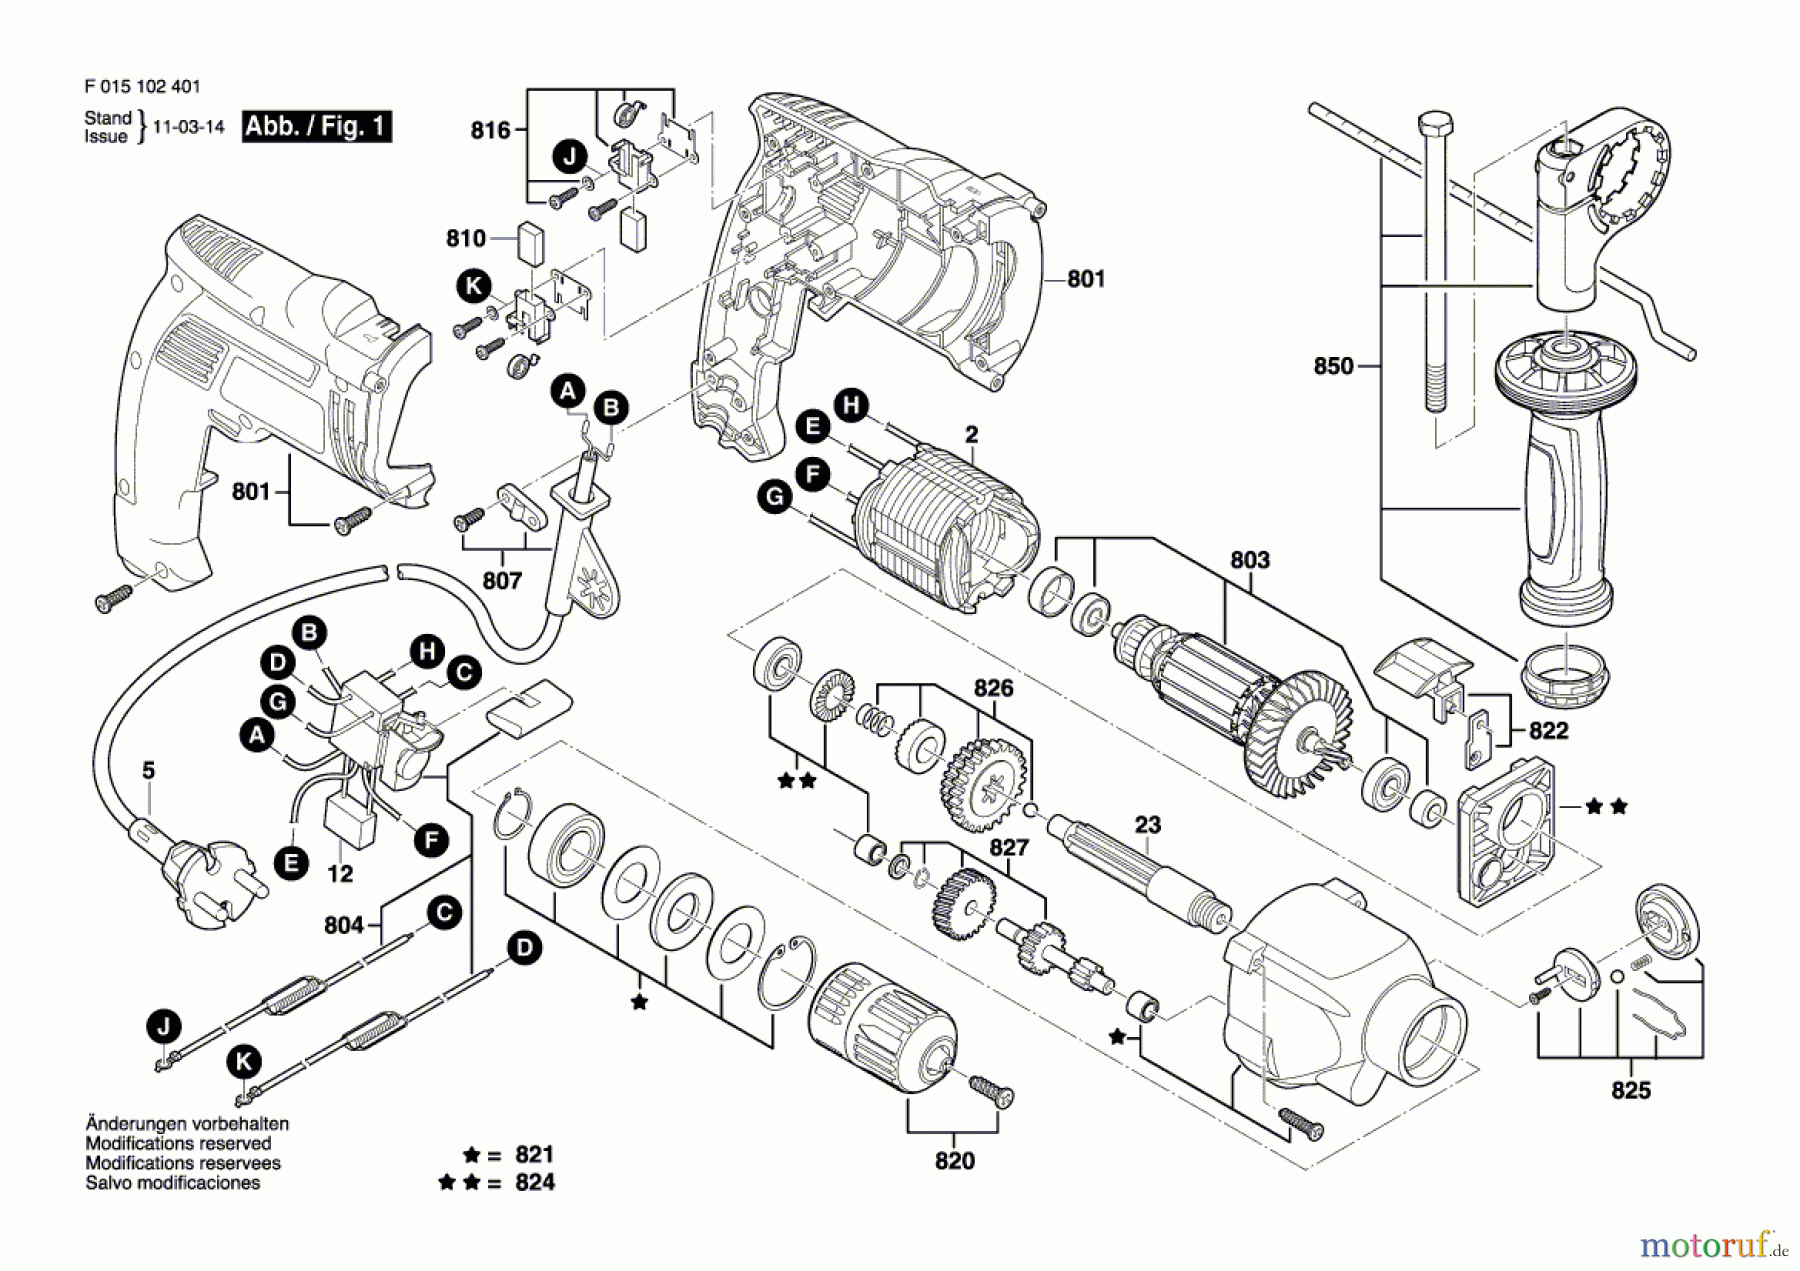  Bosch Werkzeug Schlagbohrmaschine 1024 Seite 1